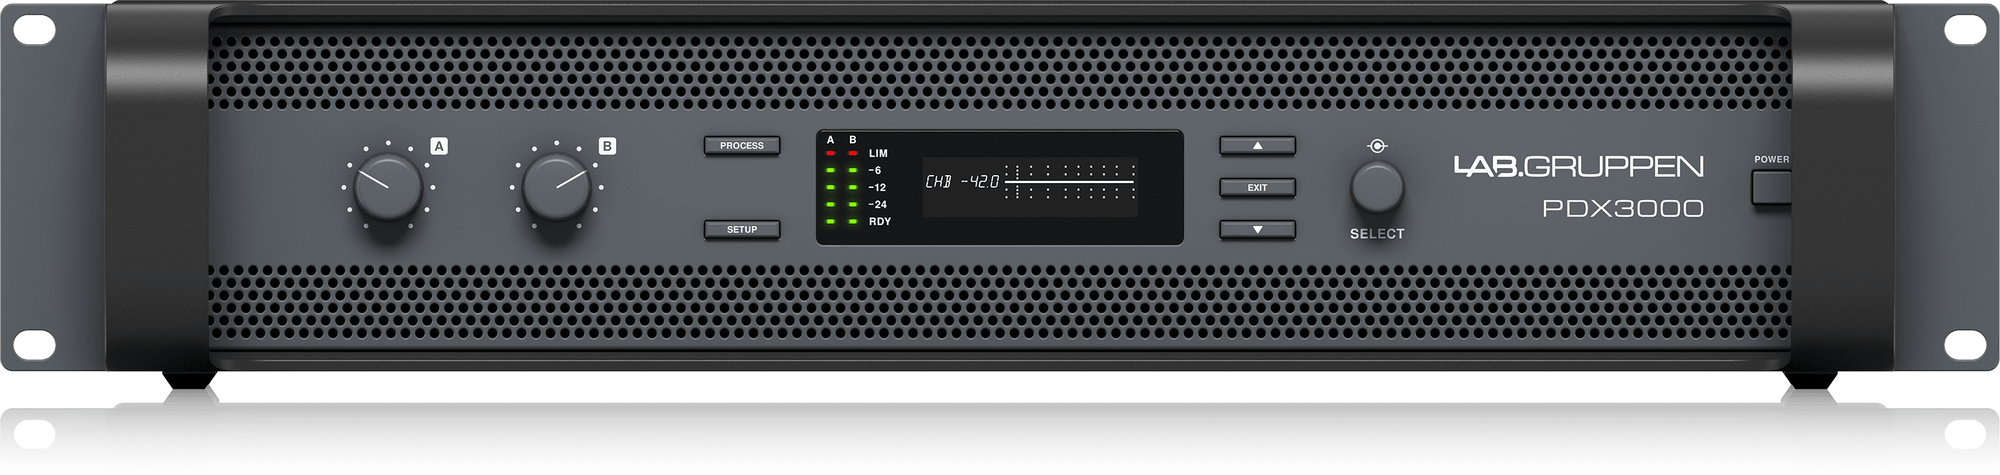 LAB.GRUPPEN PDX3000 - двухканальный усилитель с DSP, 2x1000 Вт/2 Ом, 2x1500 Вт/4 Ом, 2х800 Вт/8 Ом купить в prostore.me